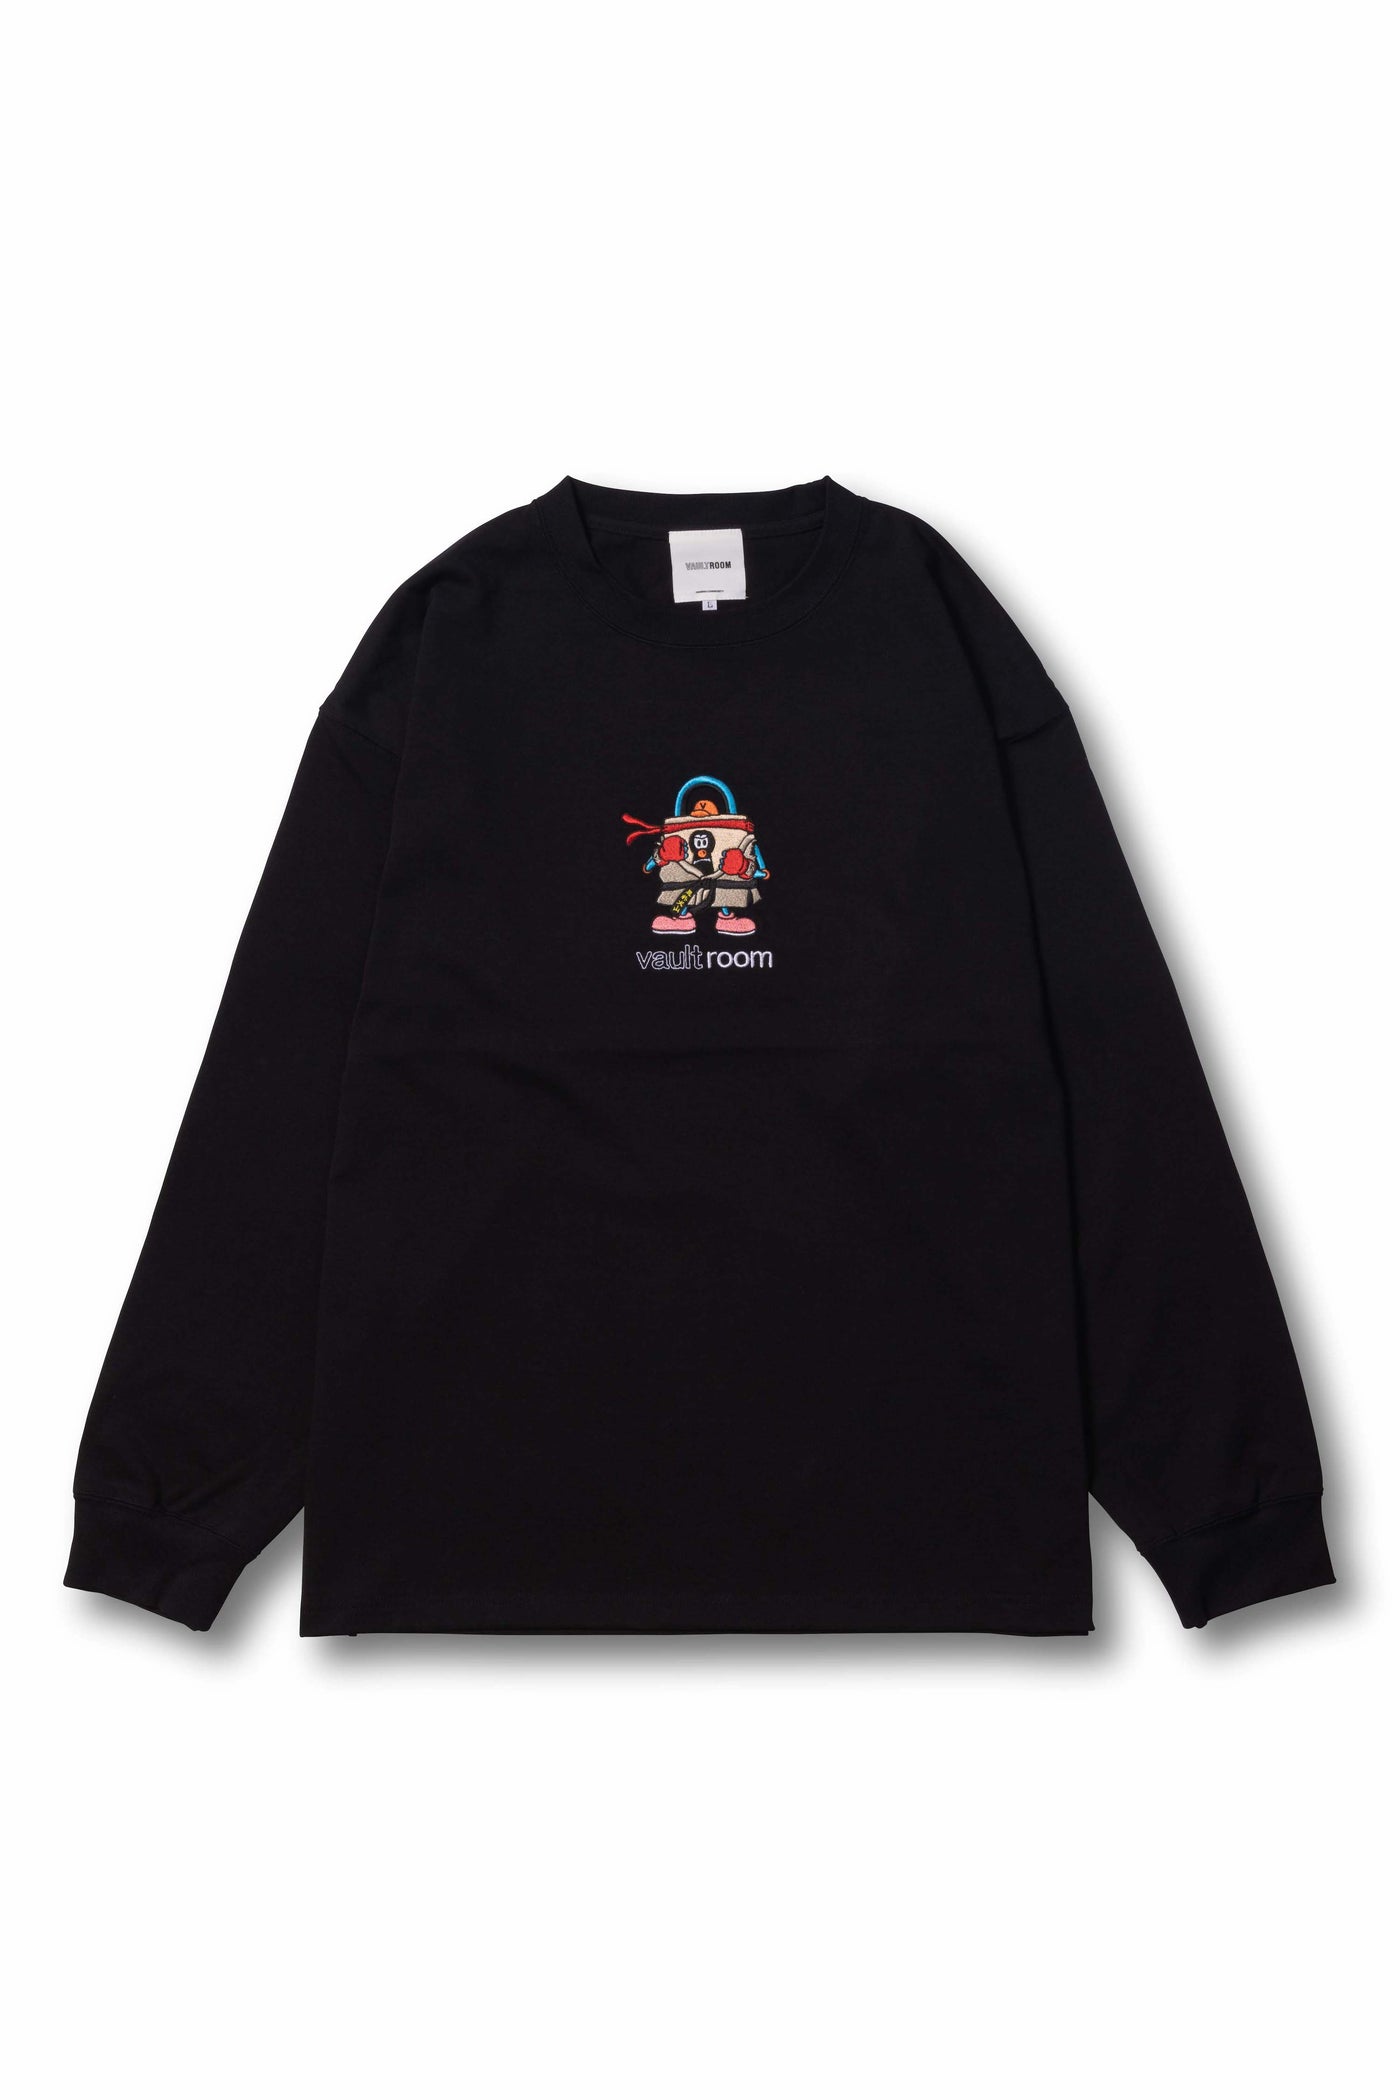 Vaultroom RYU COS BIG L/S TEE / BLK - Tシャツ/カットソー(七分/長袖)